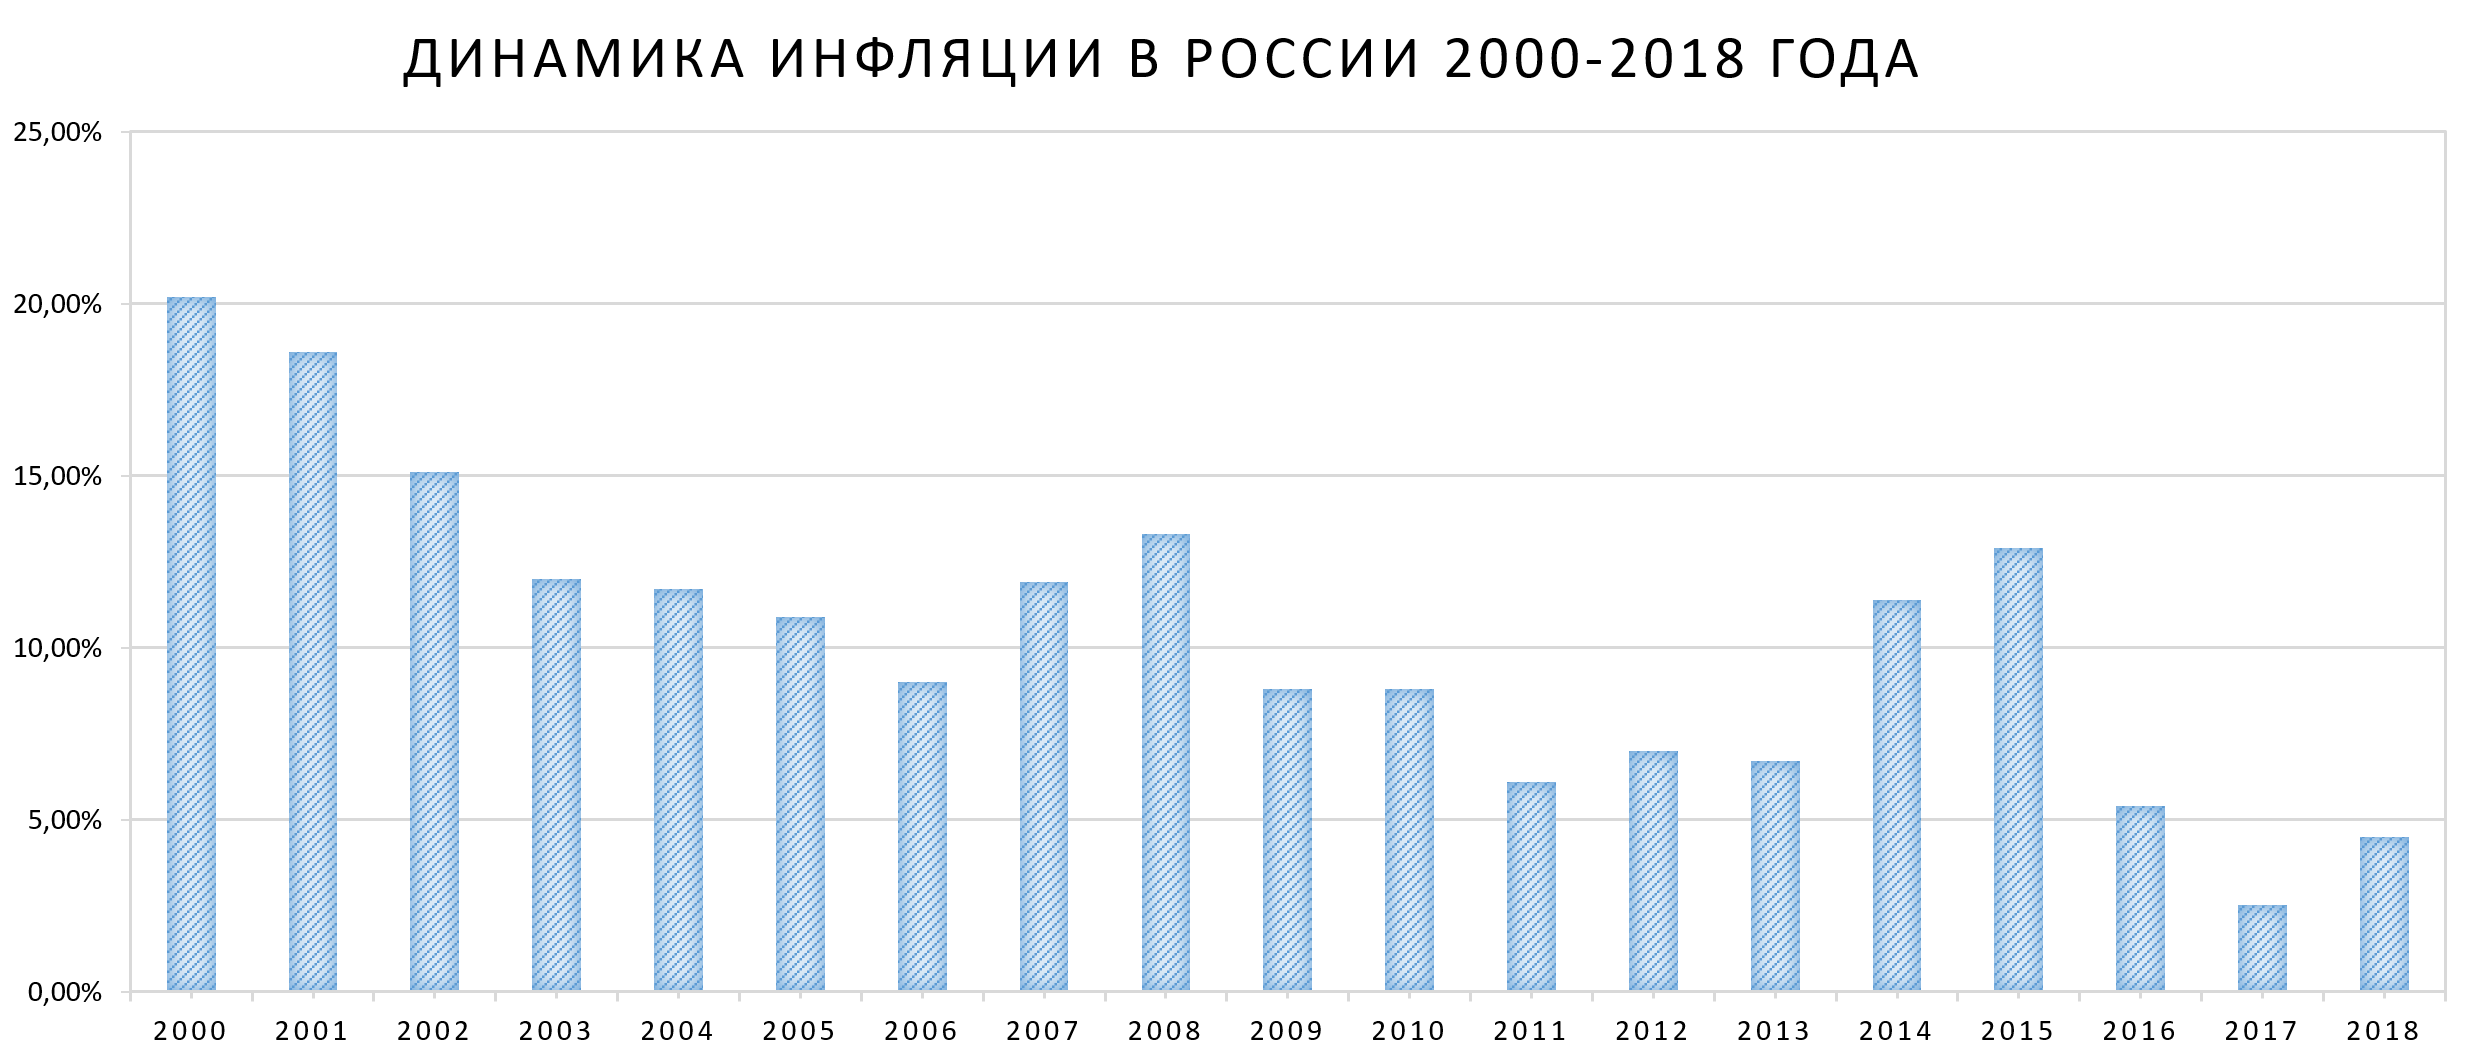 Динамика Инфляции в России 2000-2018 года